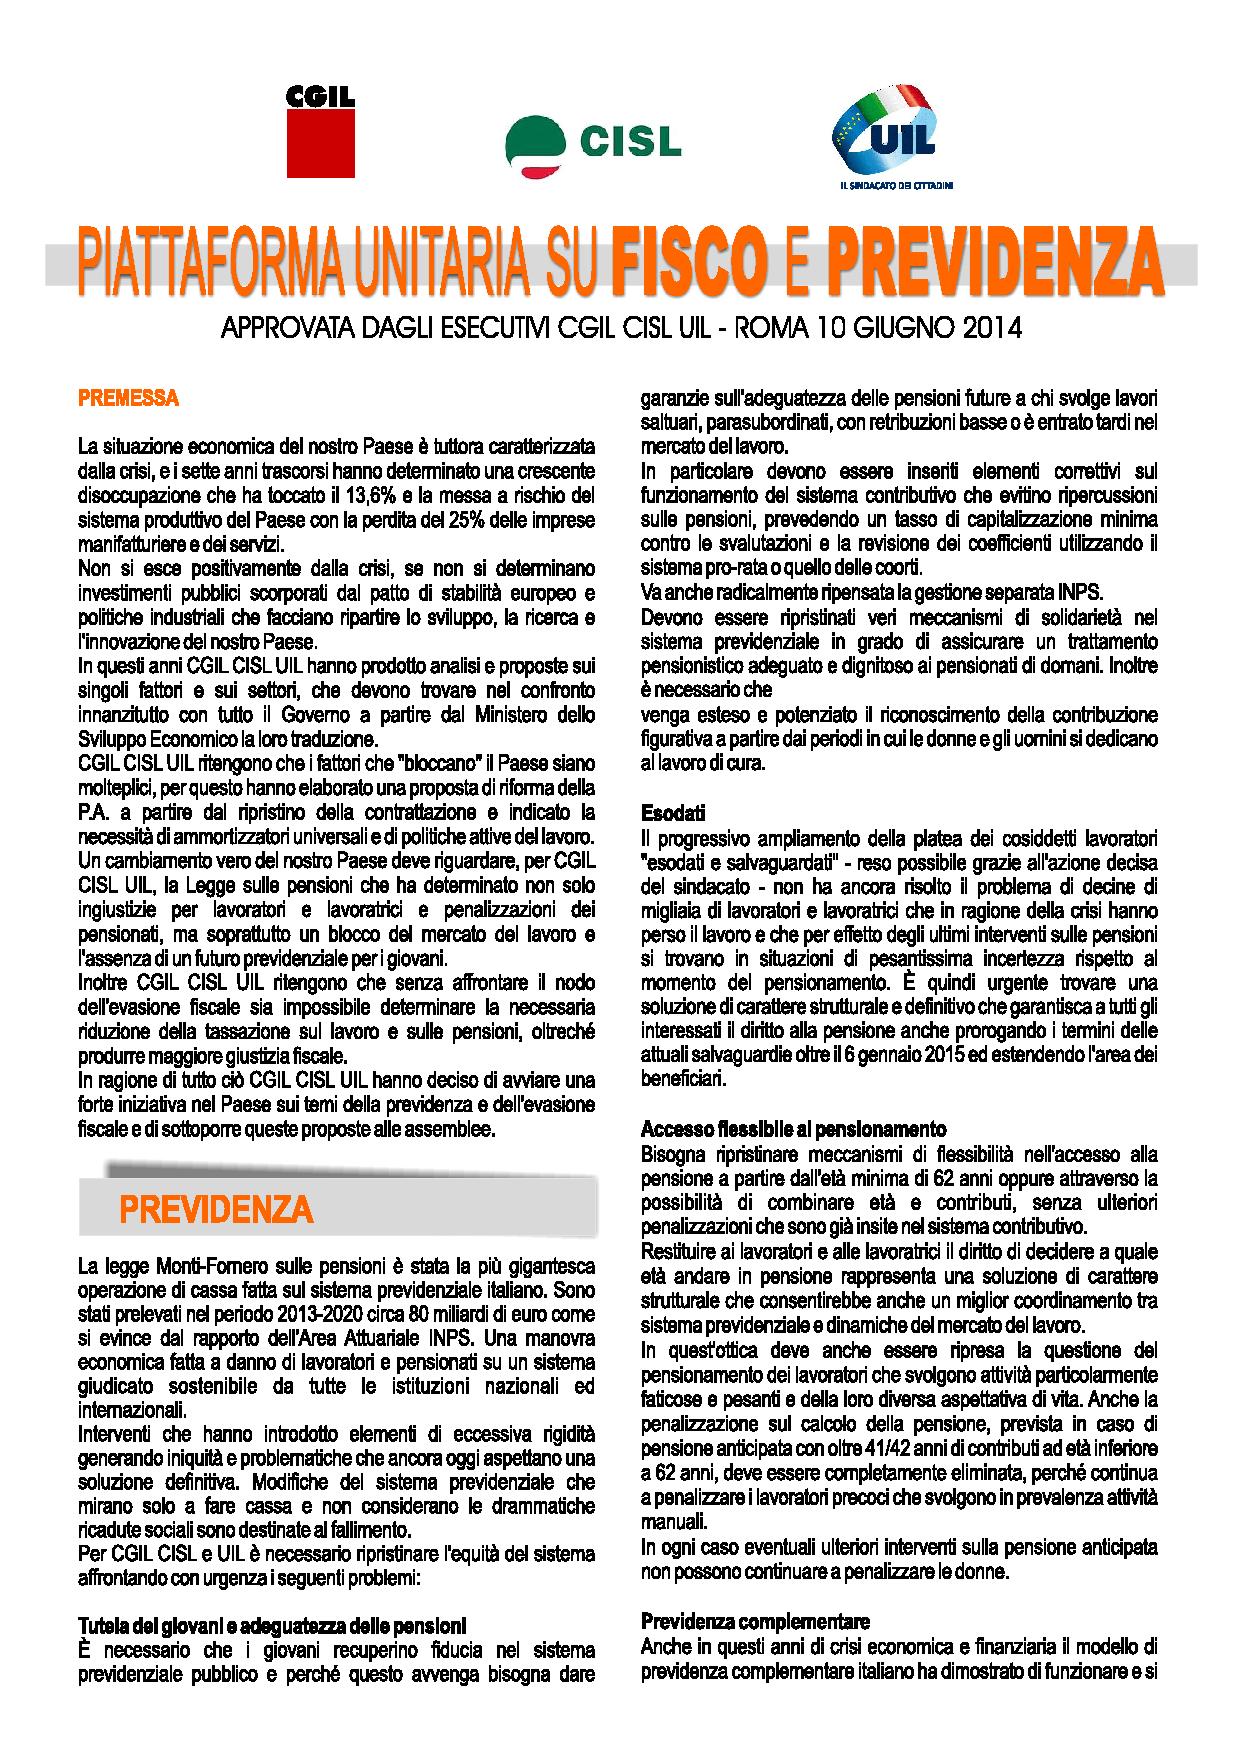 Volantino_piattaforma_unitaria_A4-page-001